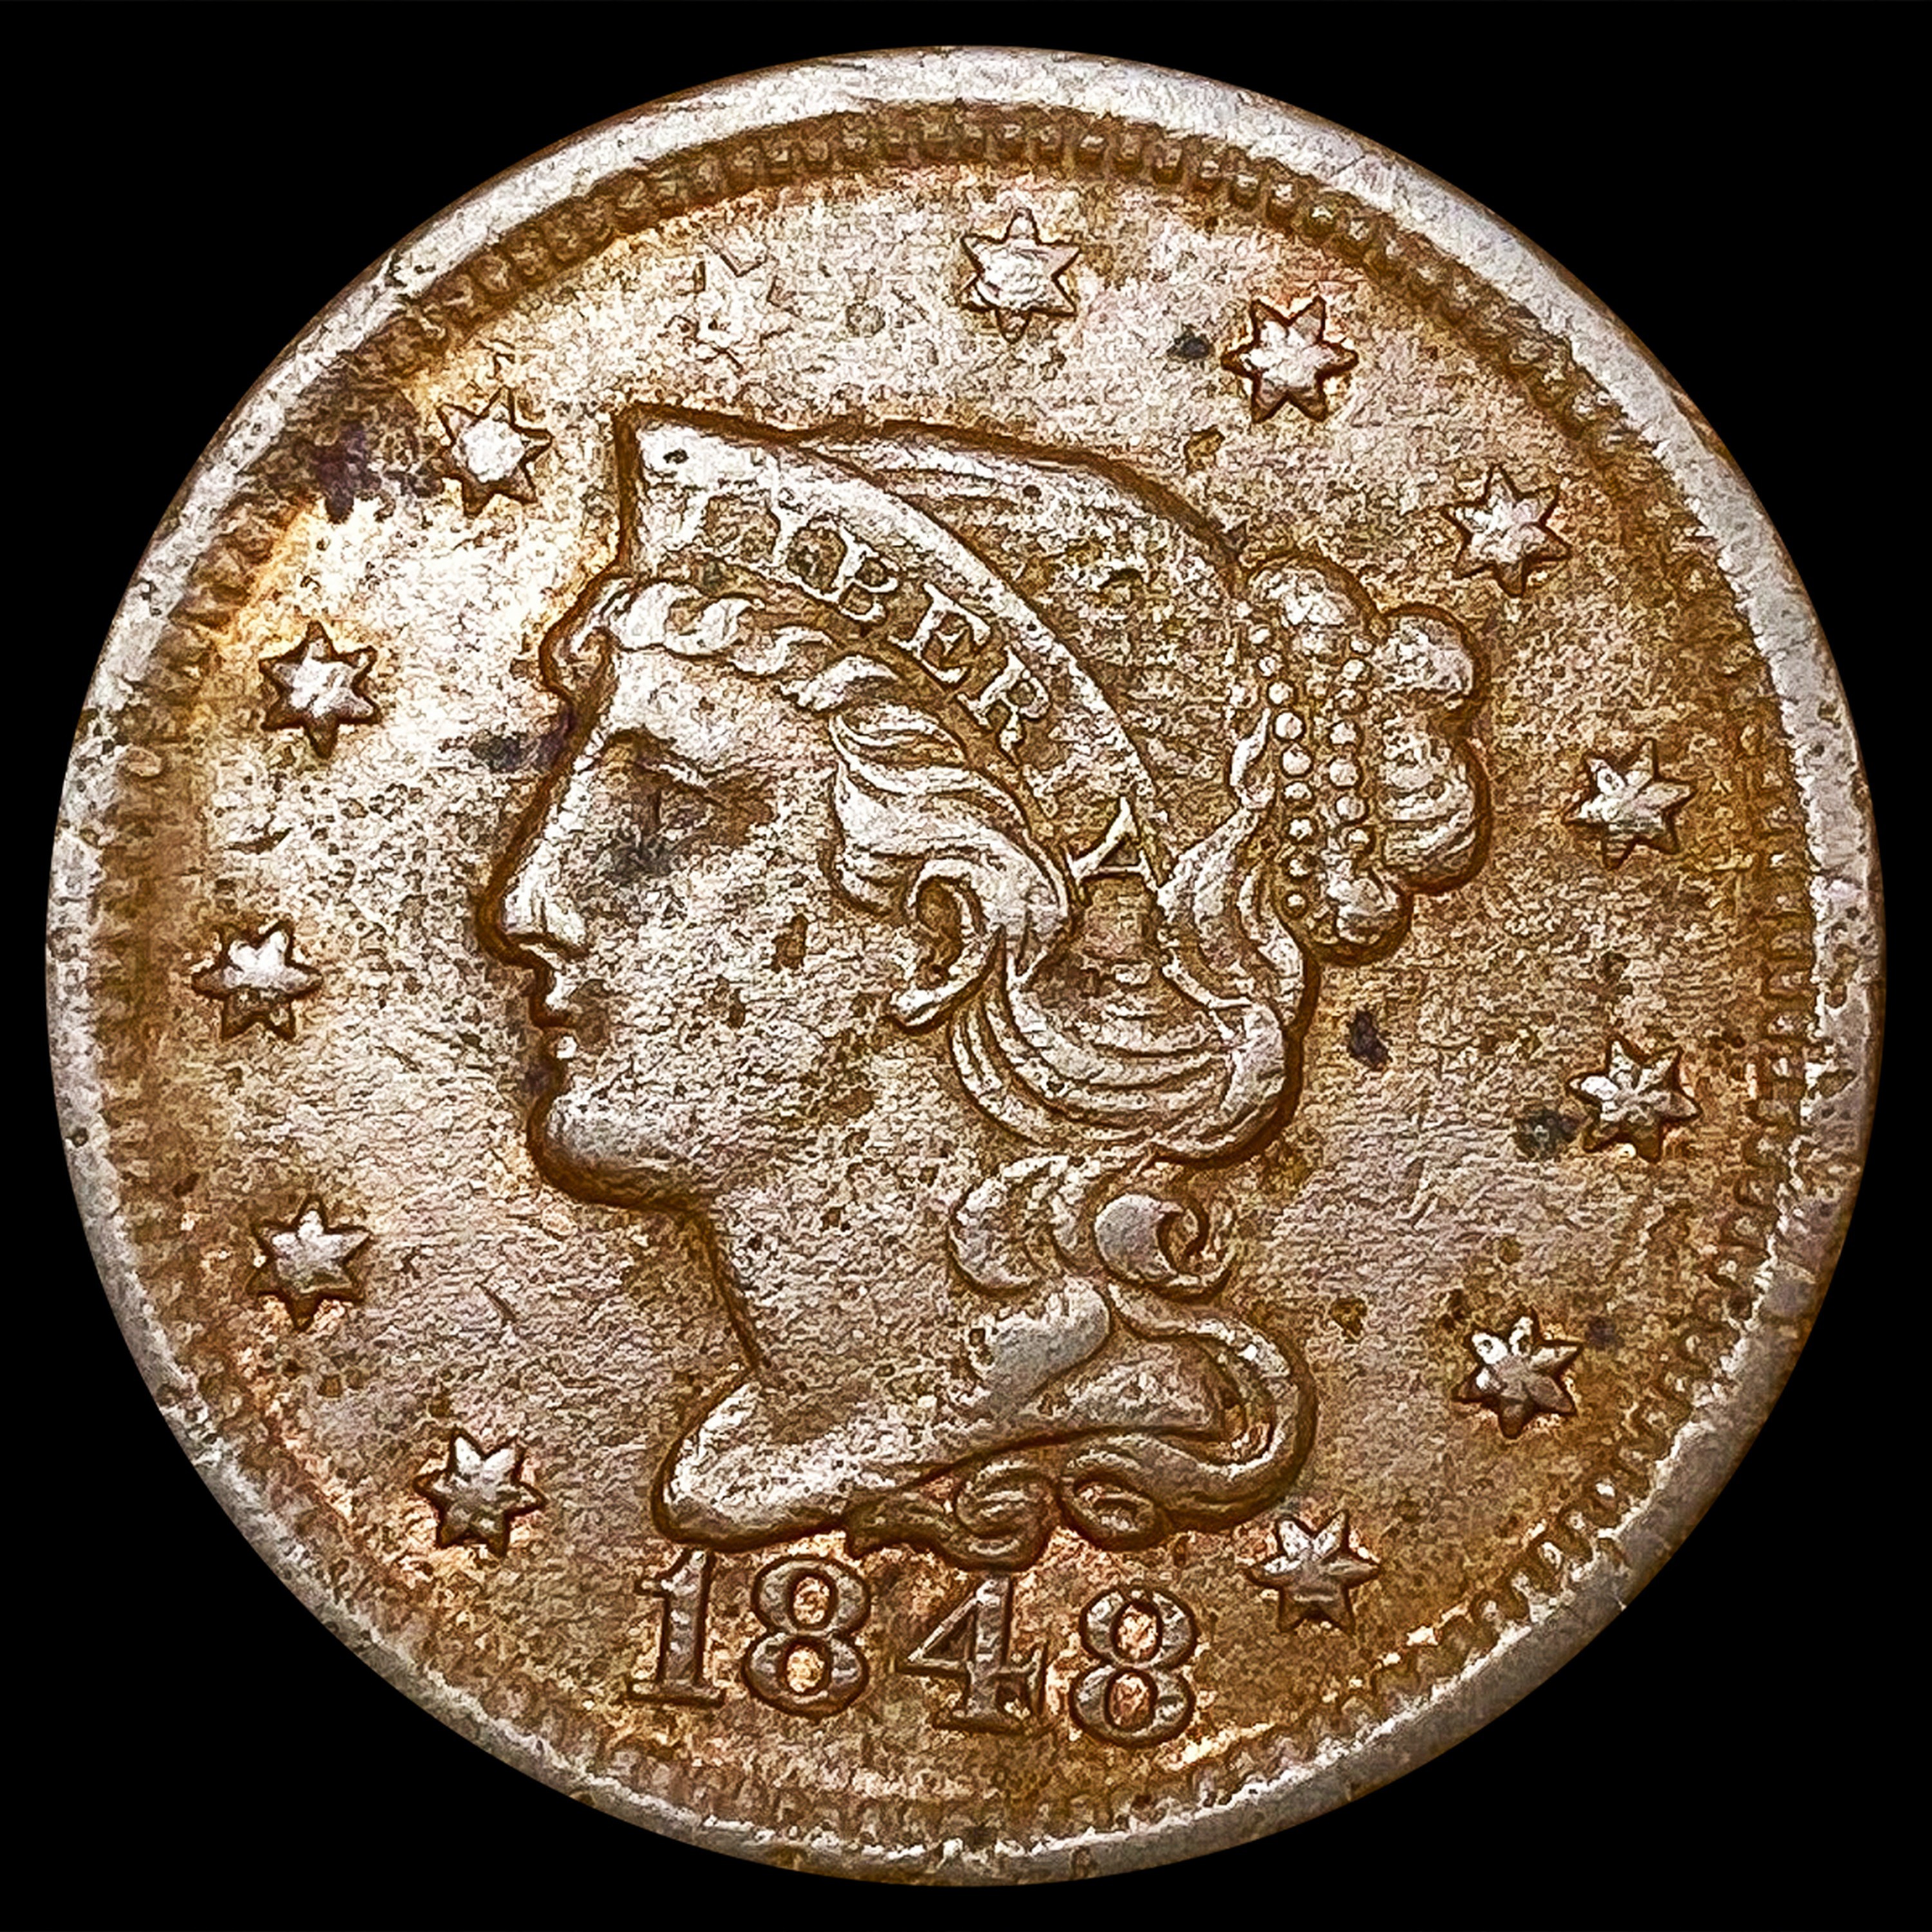 1851 Braided Hair Half Cent - An Uncirculated Brown Coin